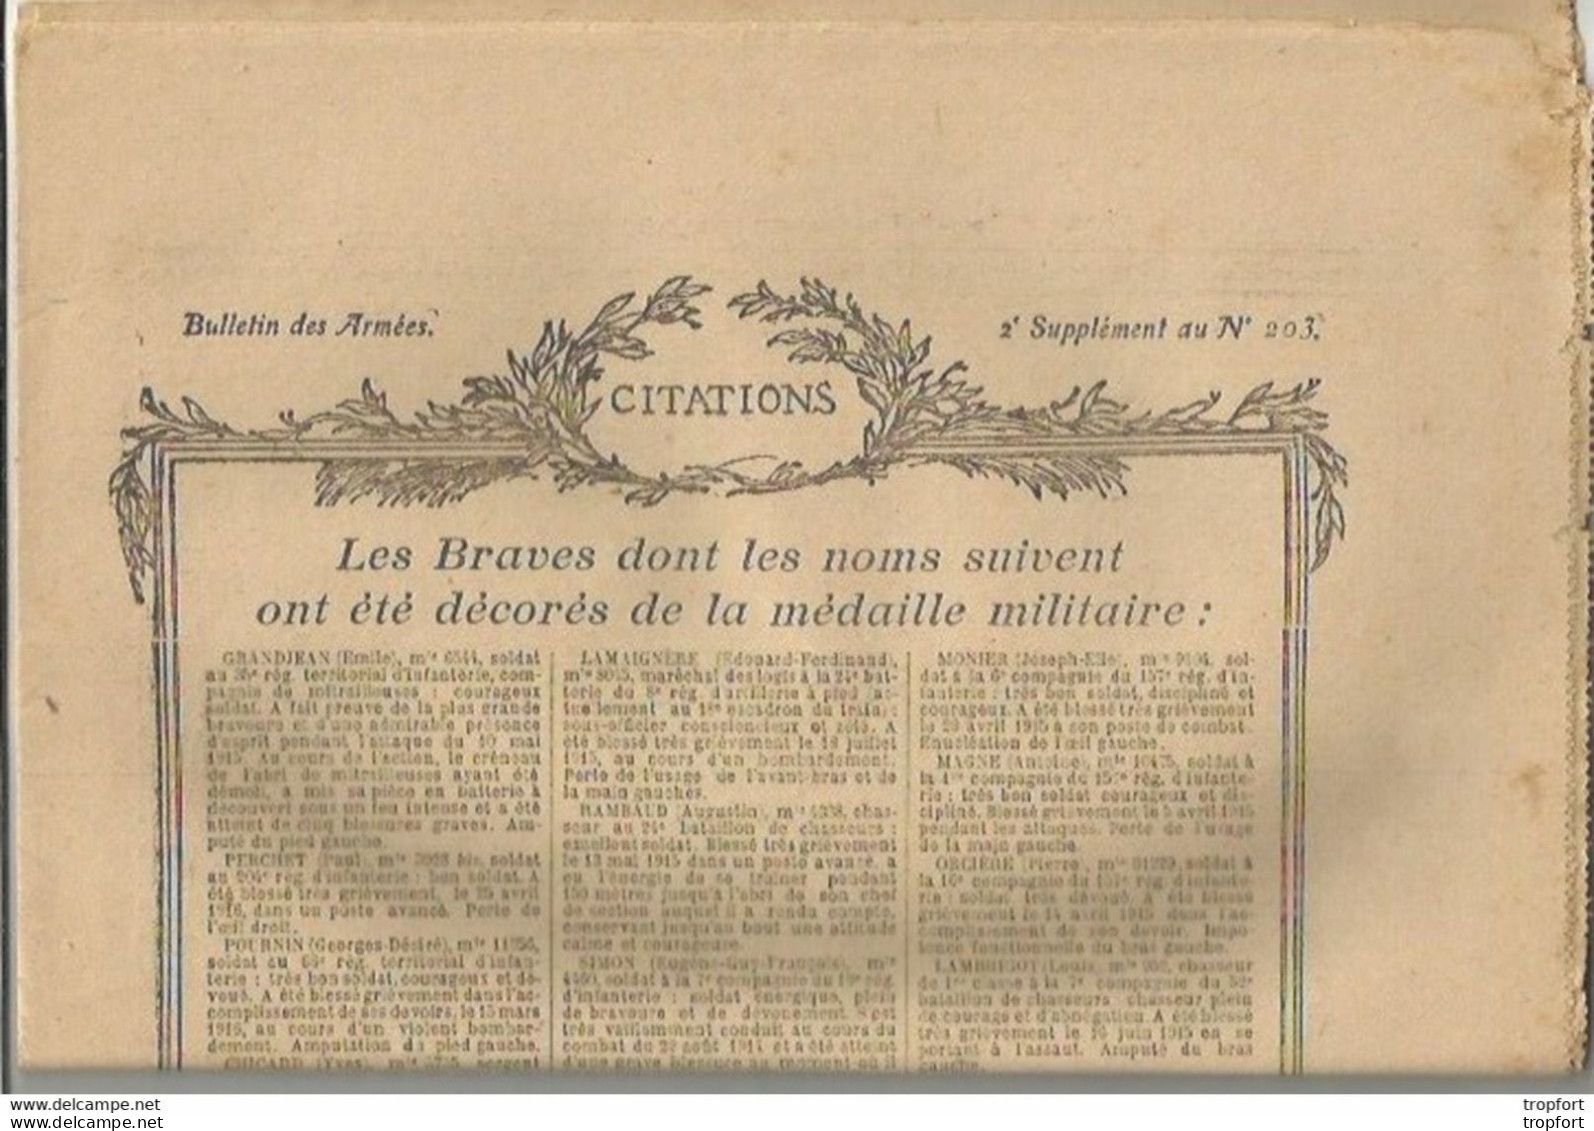 TH / Rare Journal BULLETIN DES ARMEES CITATIONS N°203 WW1 16 Pages MILITAIRES Citation 1914 1918 Guerre Bléssés - Informaciones Generales